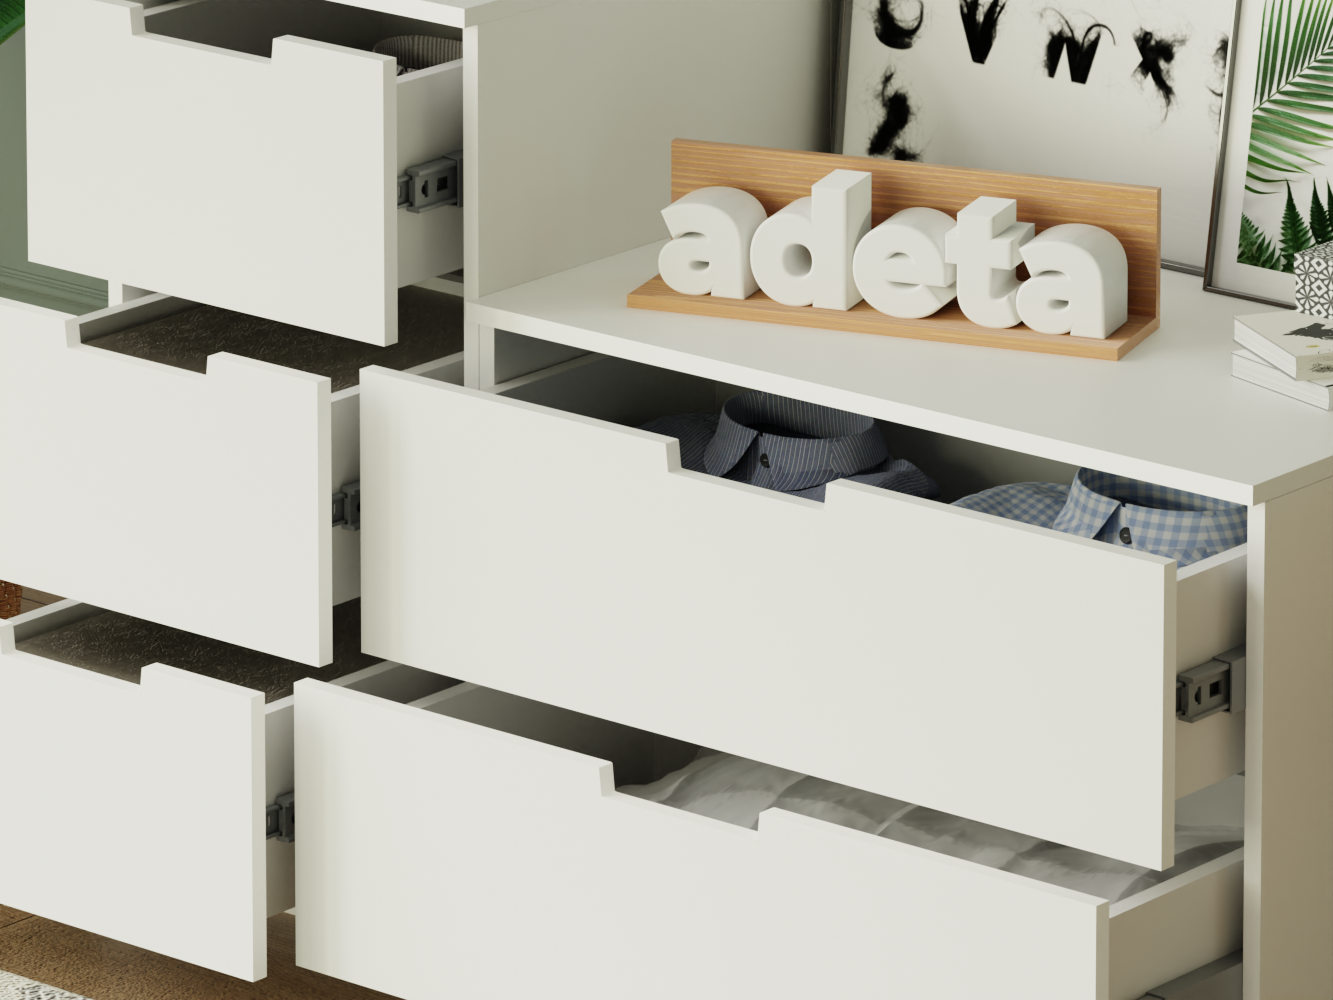  Комод Нордли 14 white ИКЕА (IKEA) изображение товара